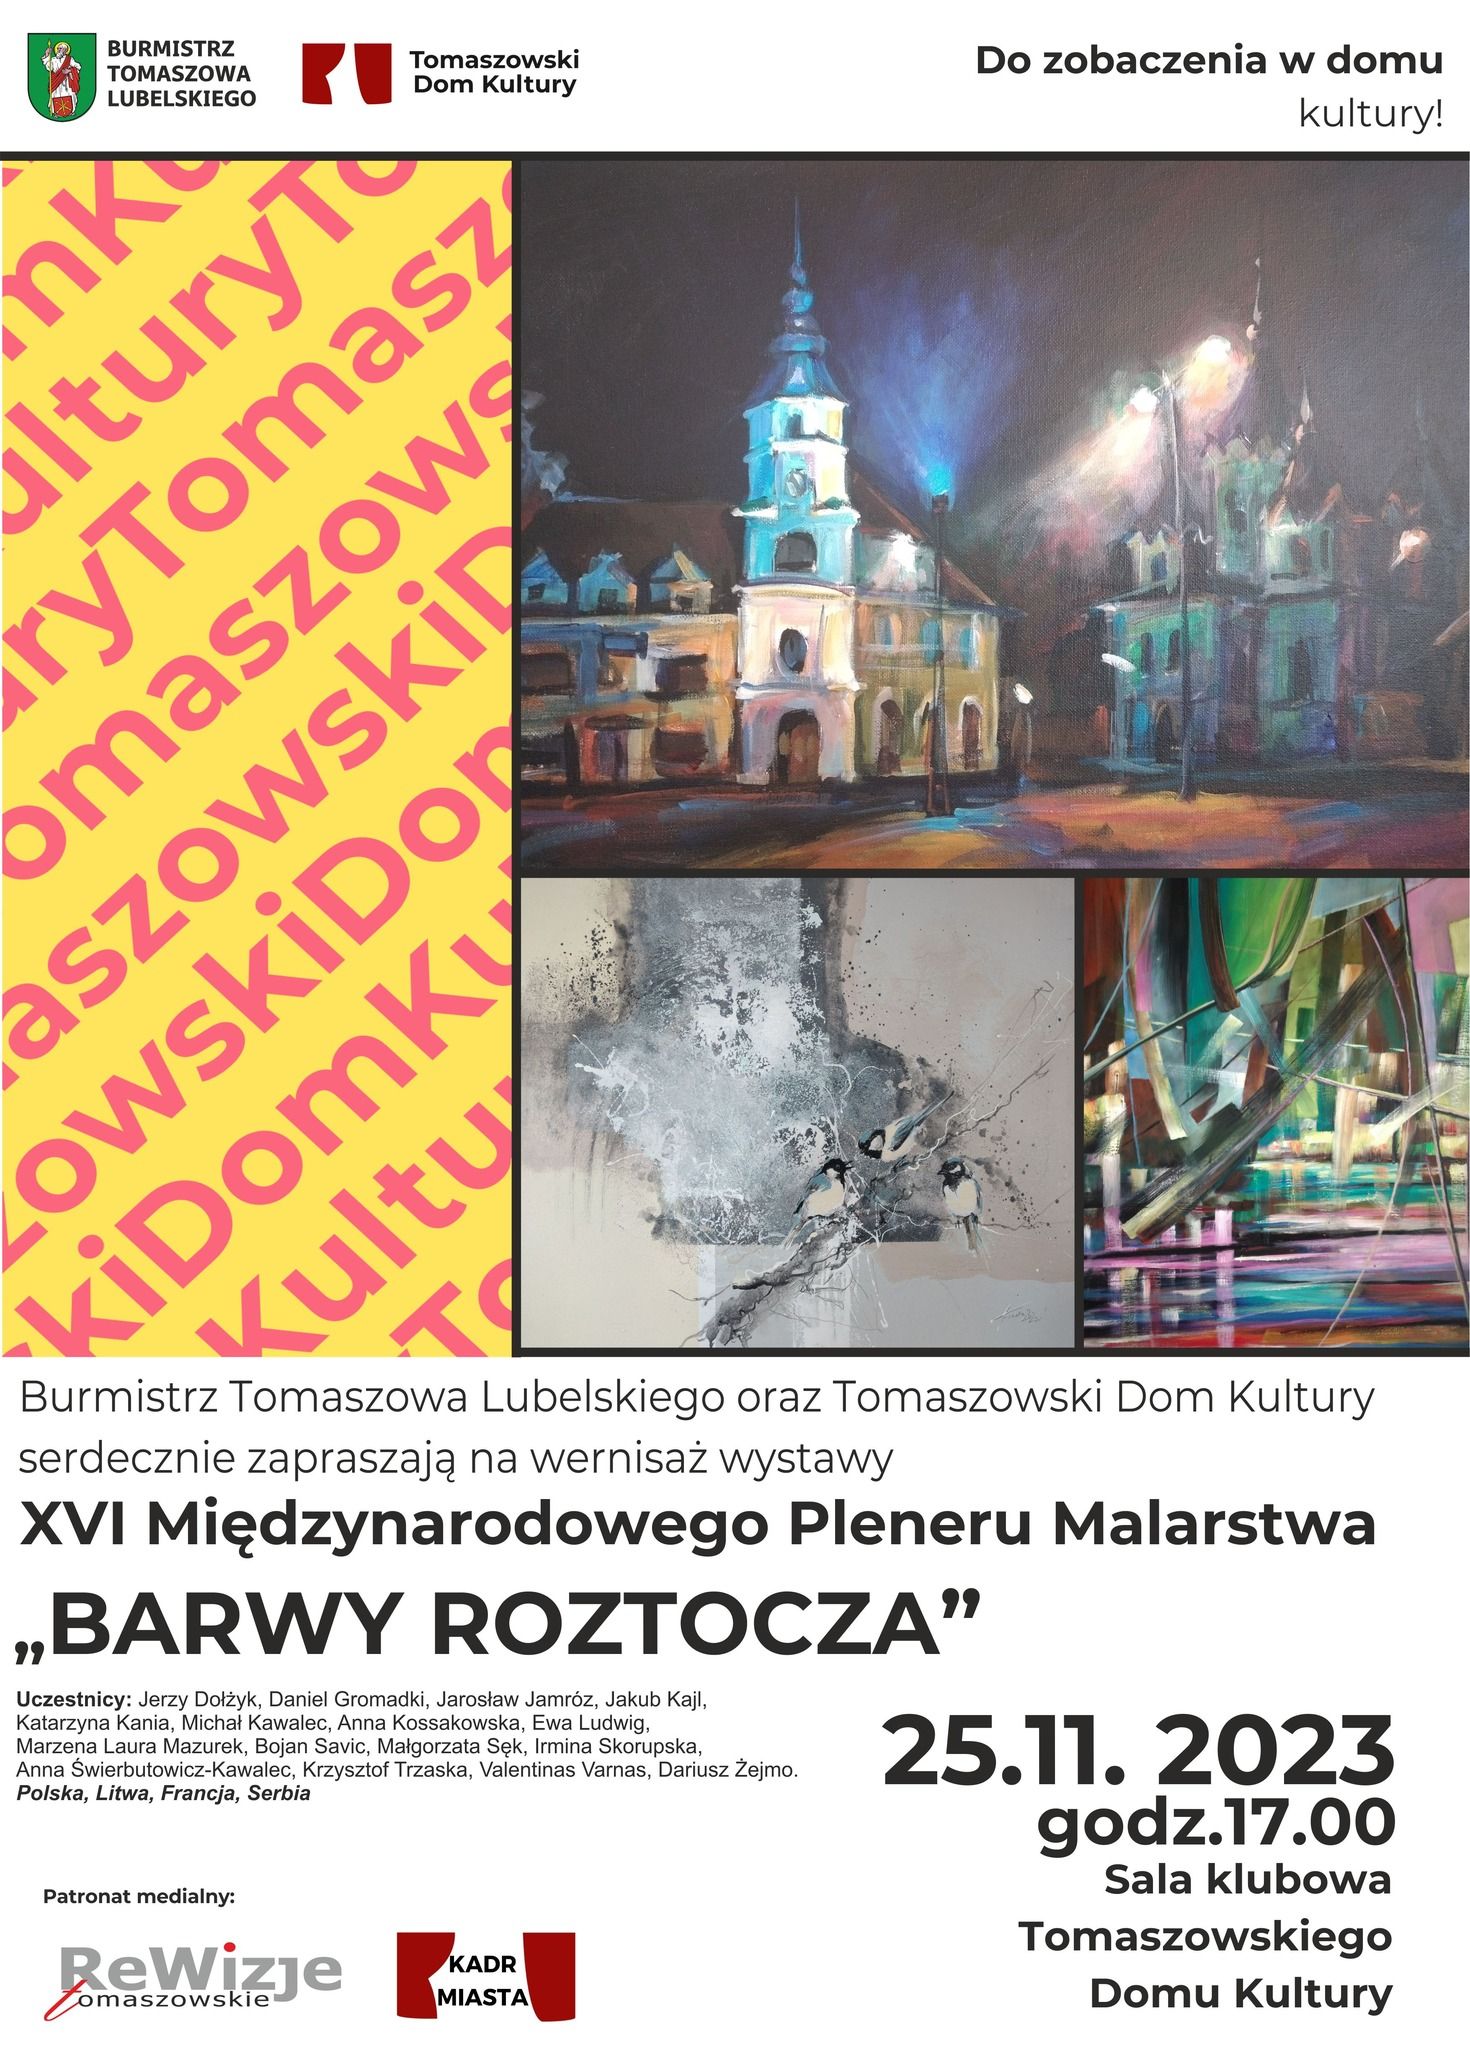 Wernisaż wystawy
XVI Międzynarodowego Pleneru Malarstwa
„BARWY ROZTOCZA”